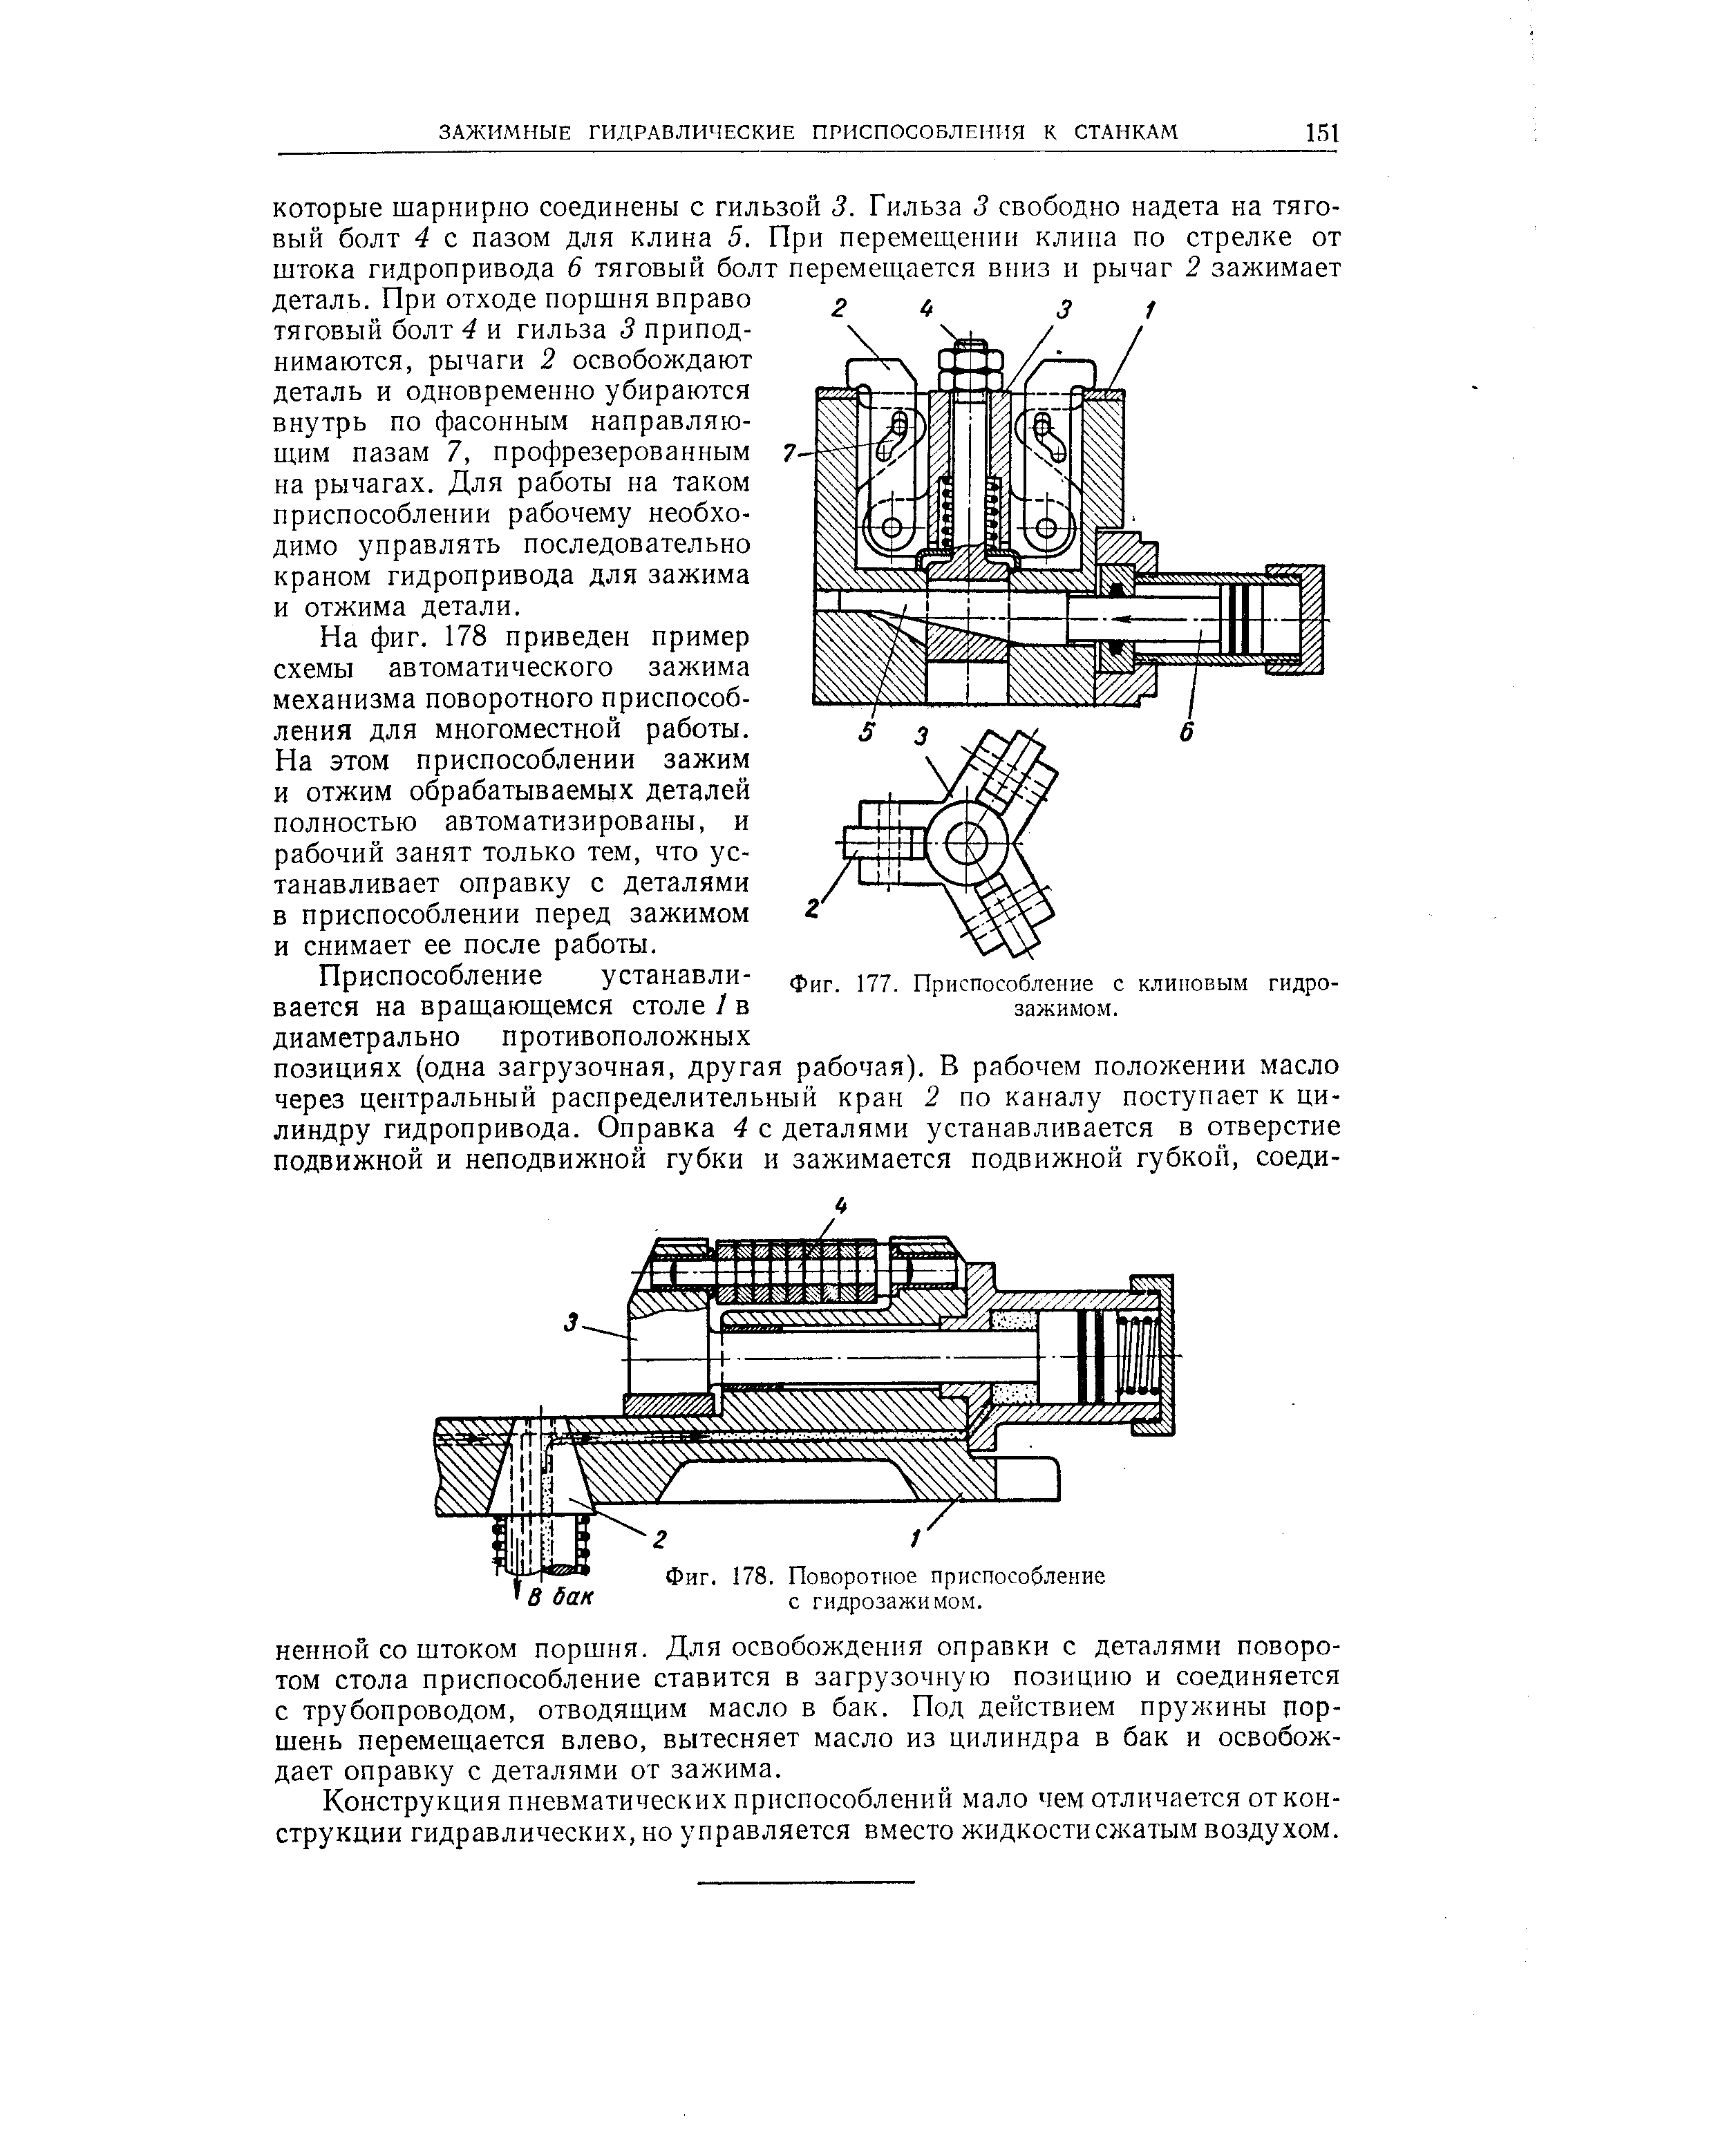 На фиг. 178 приведен пример схемы автоматического зажима механизма поворотного приспособления для многоместной работы.
